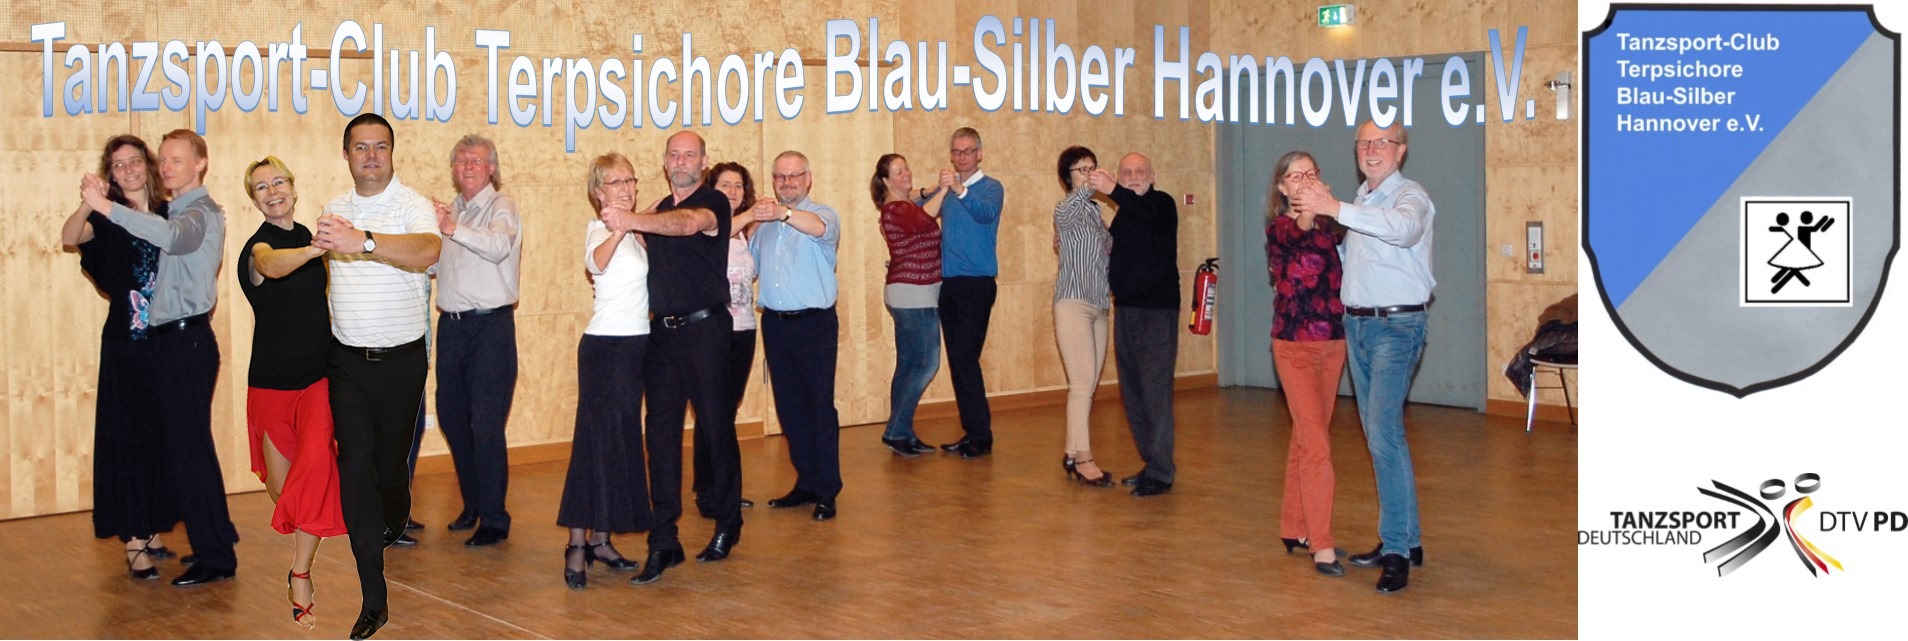 Tanzsport-Club Terpsichore Blau-Silber Hannover e.V.